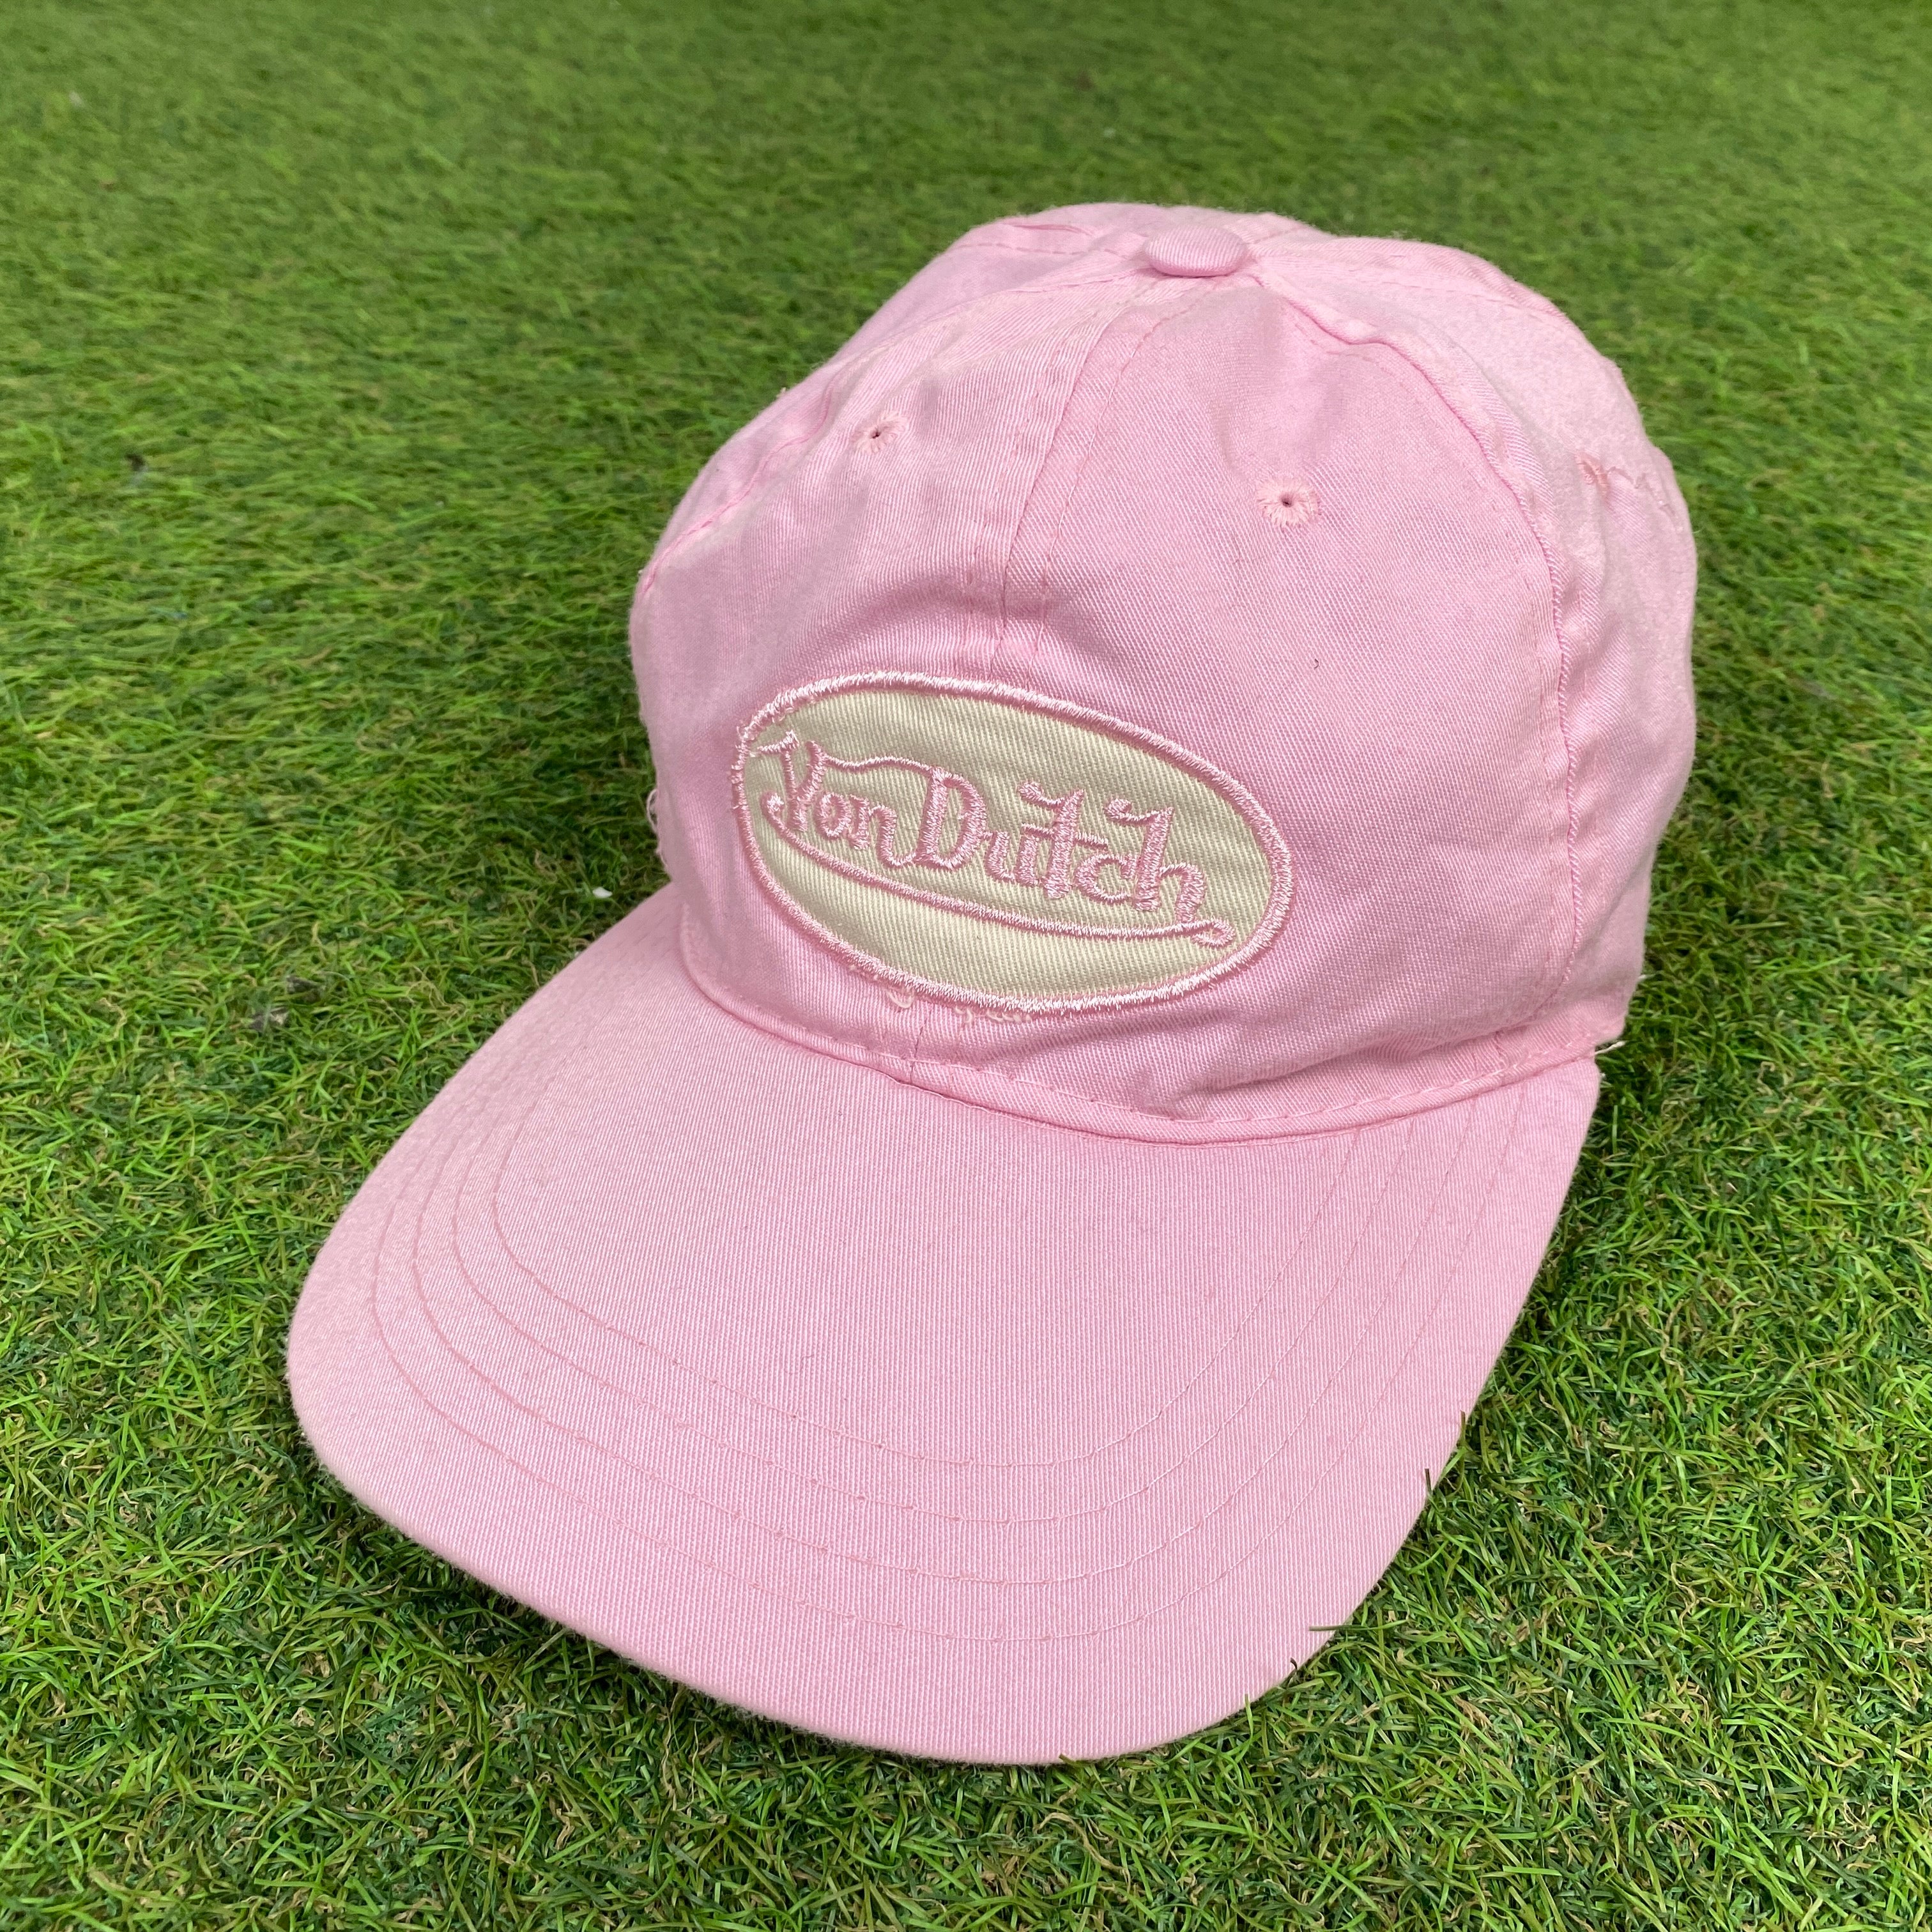 Retro Von Dutch Hat Pink